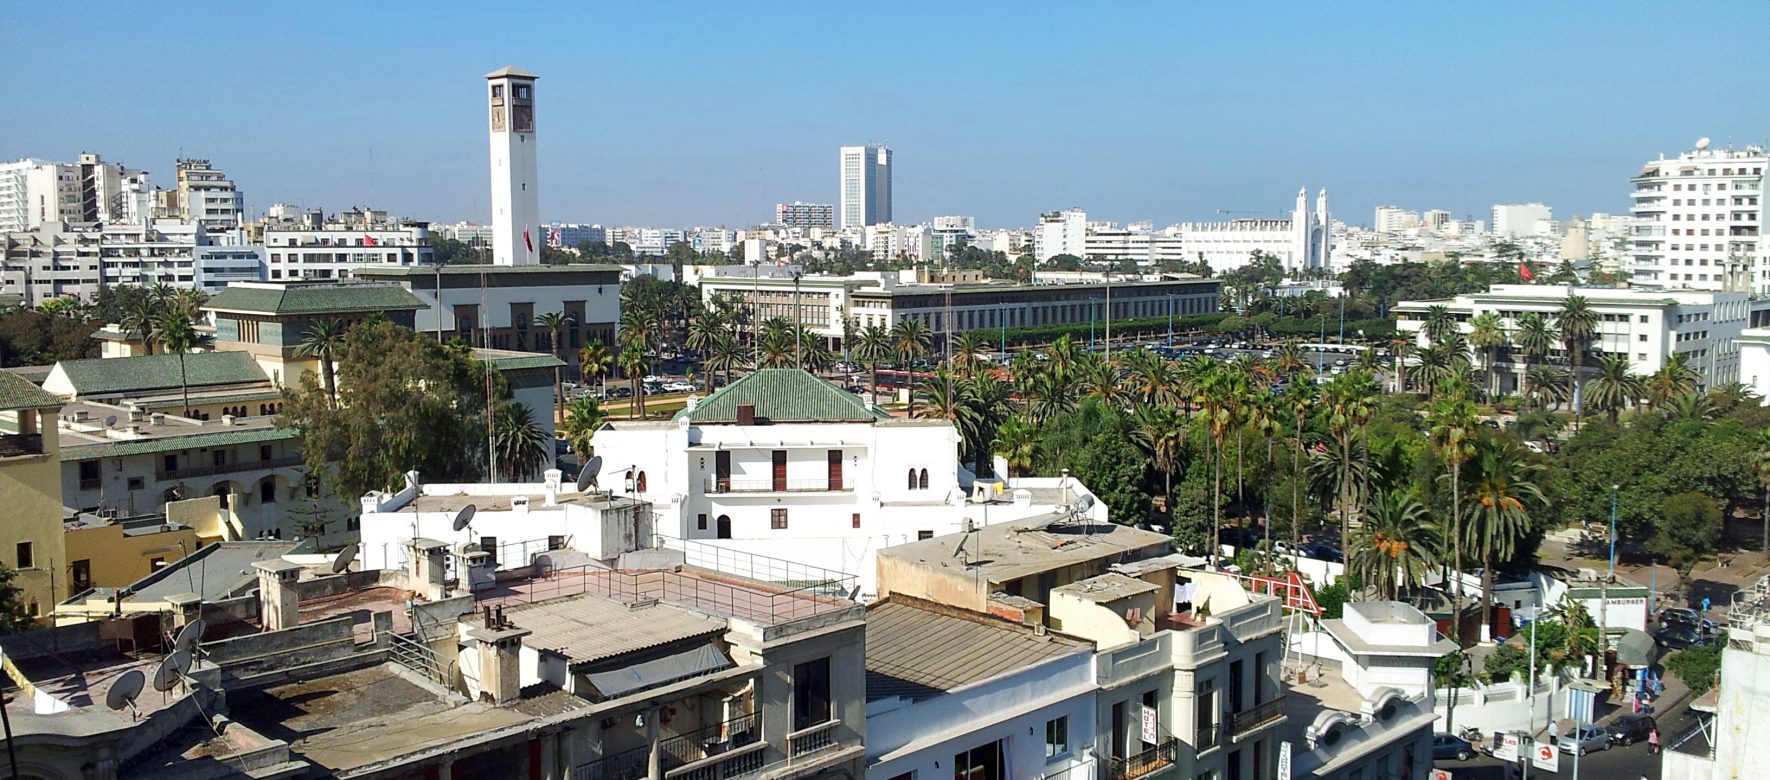 Conférence sur l’emploi à Casablanca : le contrat d’insertion est à l’honneur !